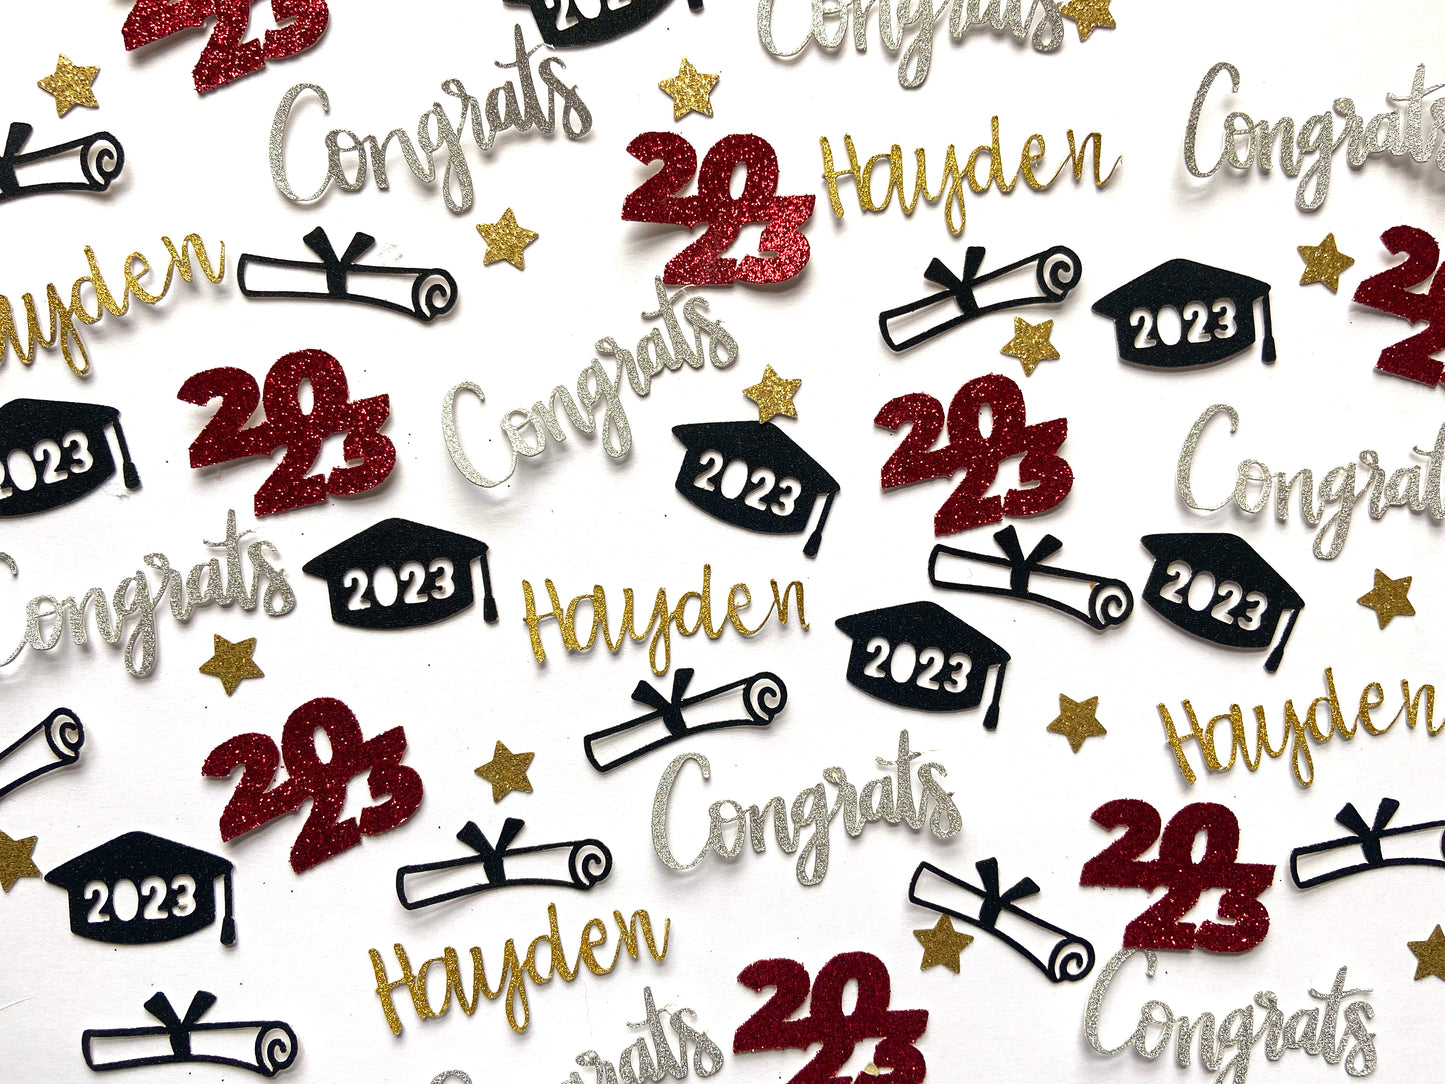 Personalized graduation confetti